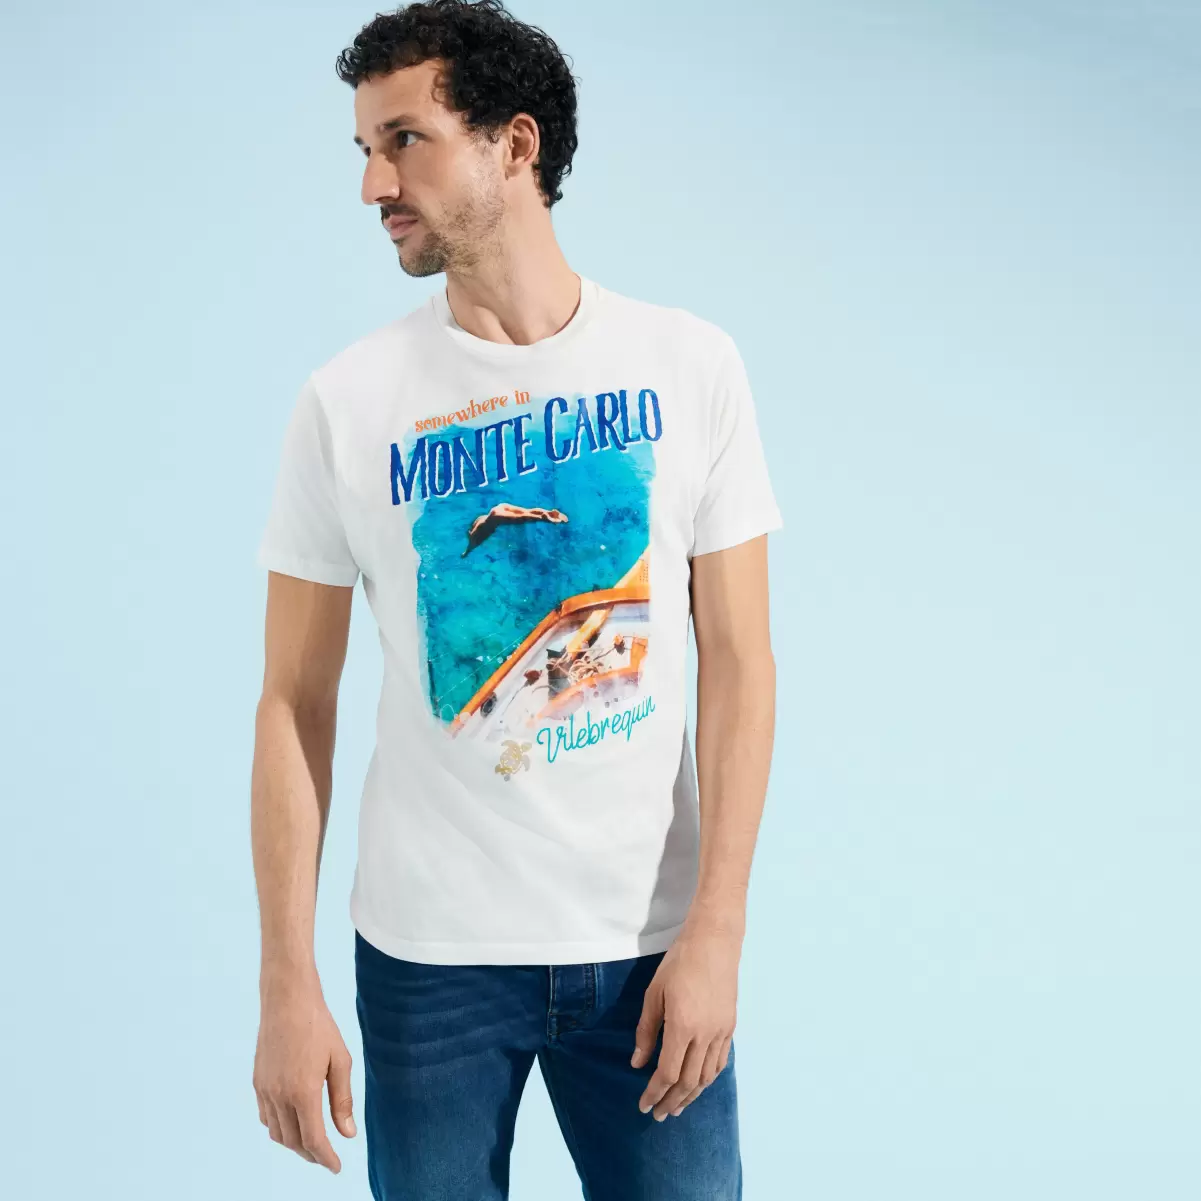 Popularität T-Shirts Off White / Weiss Herren Vilebrequin Monte Carlo T-Shirt Aus Baumwolle Für Herren